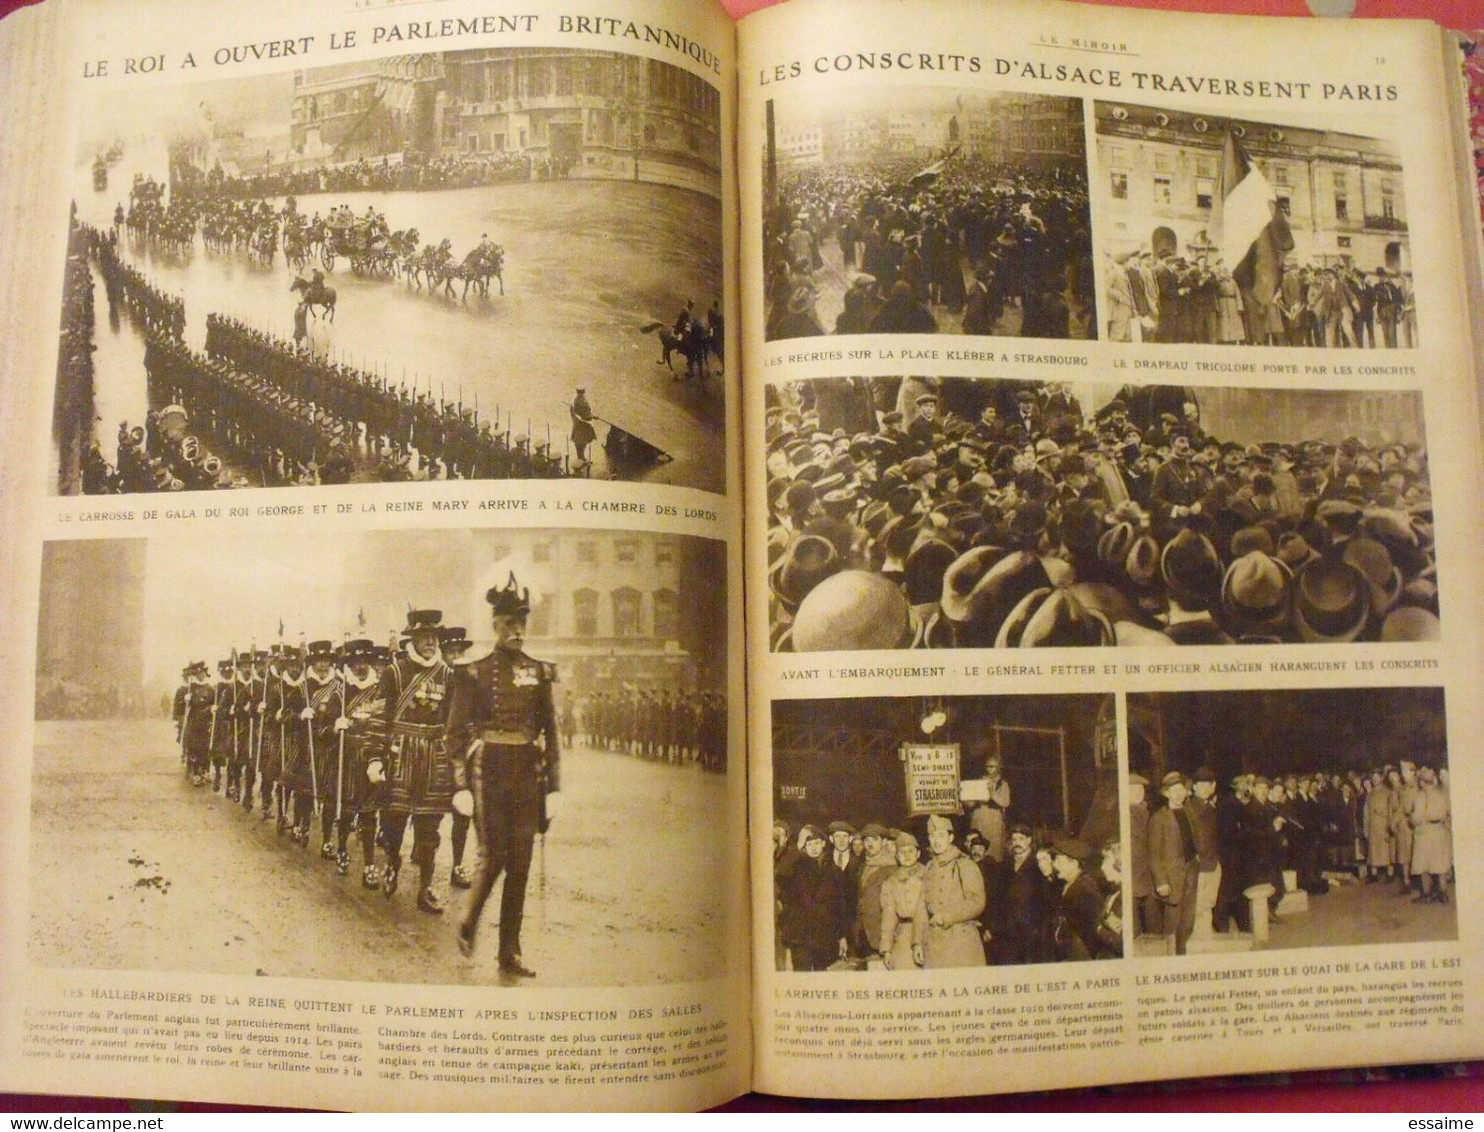 Le miroir recueil reliure 1919-1920 (75 n°). l'après guerre 14-18 très illustrée, documentée. russie bolcheviks